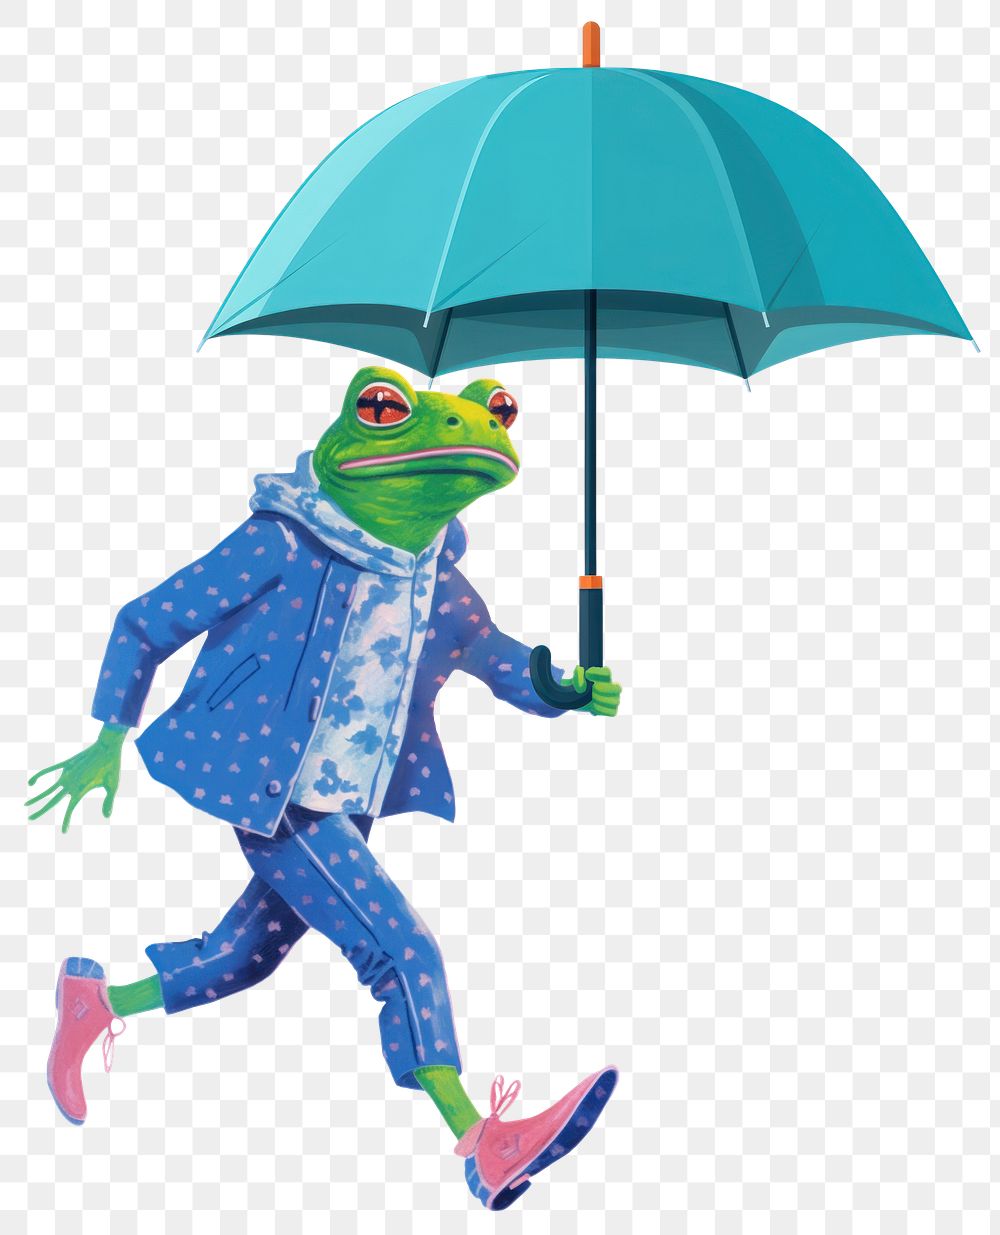 Frog character png holding umbrella digital art illustration, transparent background